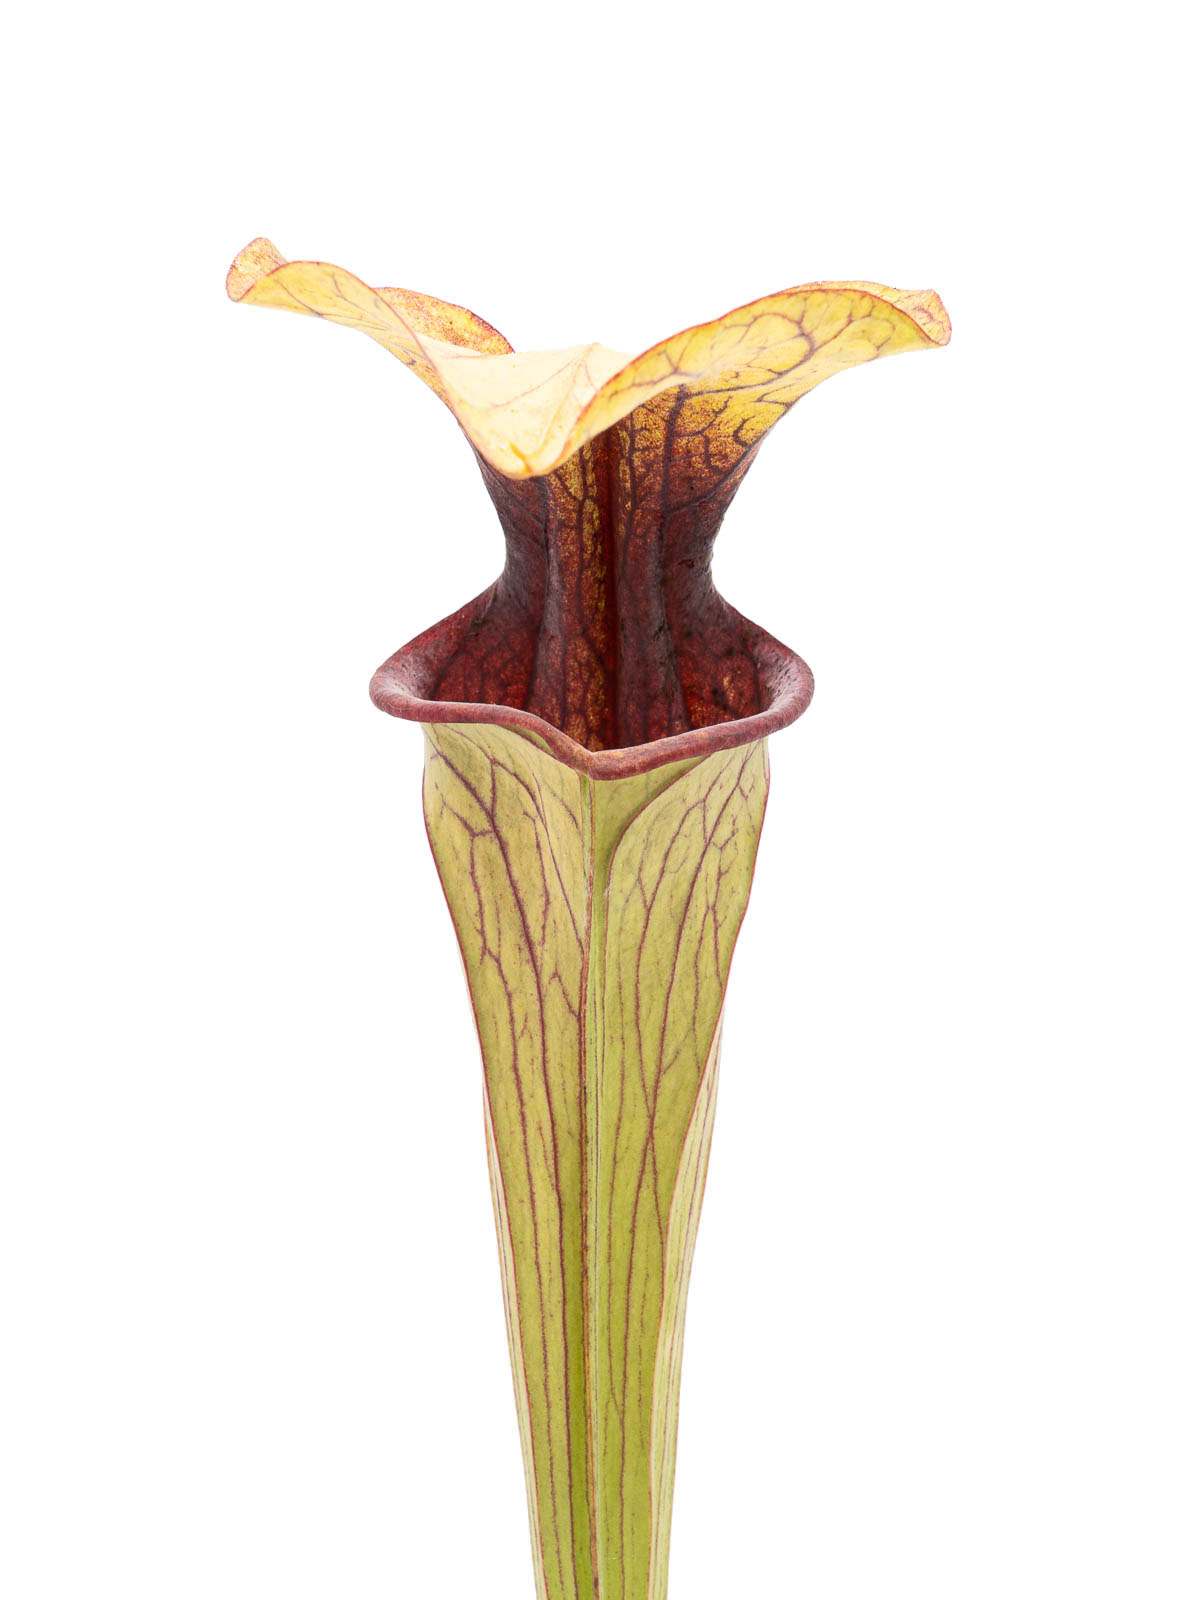 Sarracenia oreophila - MK O25, tall stocky form